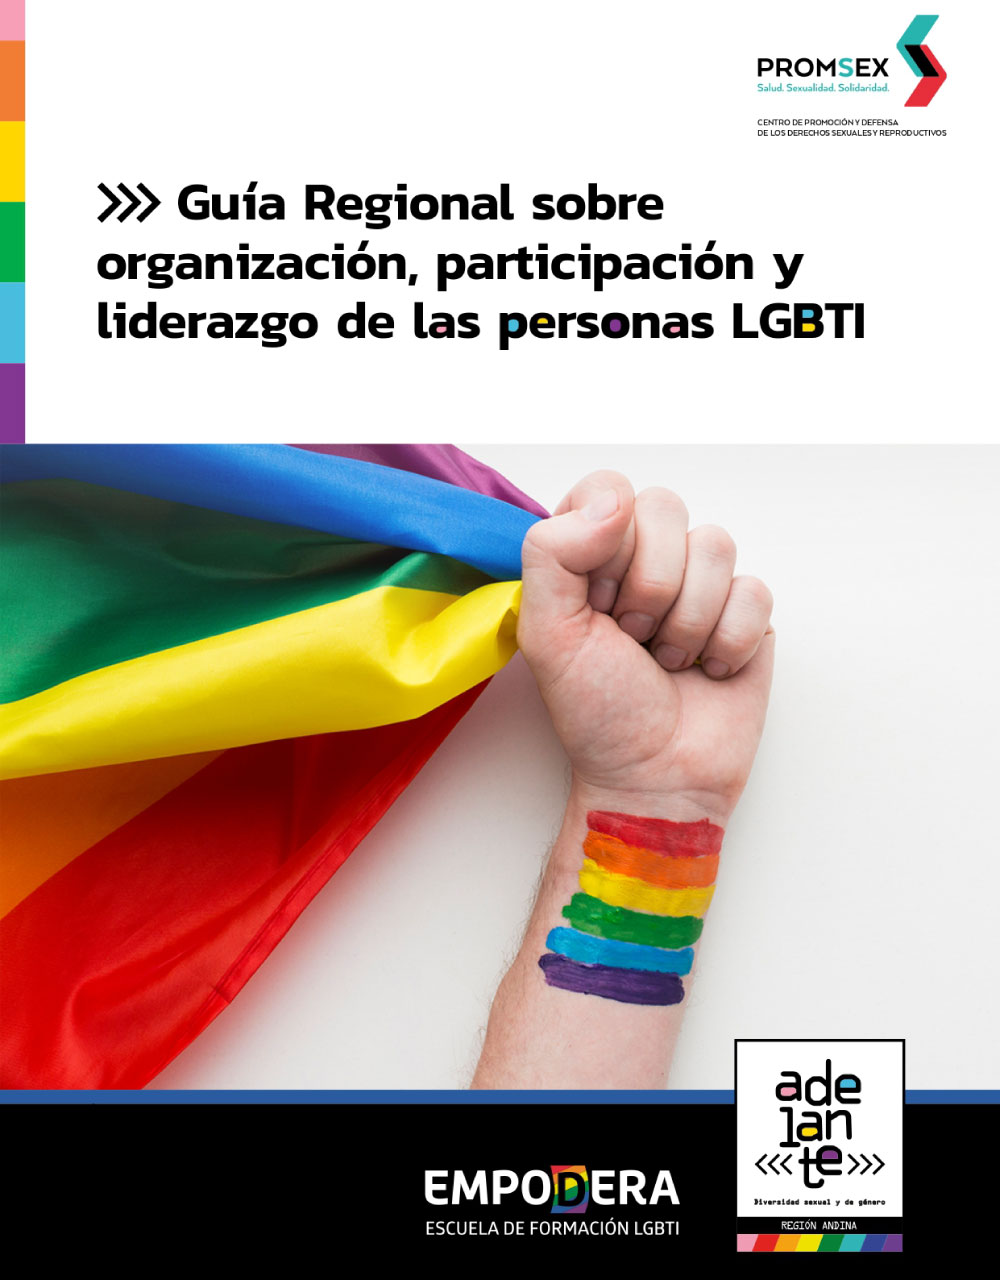 Portada de la Guía Regional sobre organización, participación y liderazgo de las personas LGBTI. Imagen de un mano con una bandera LGBTI